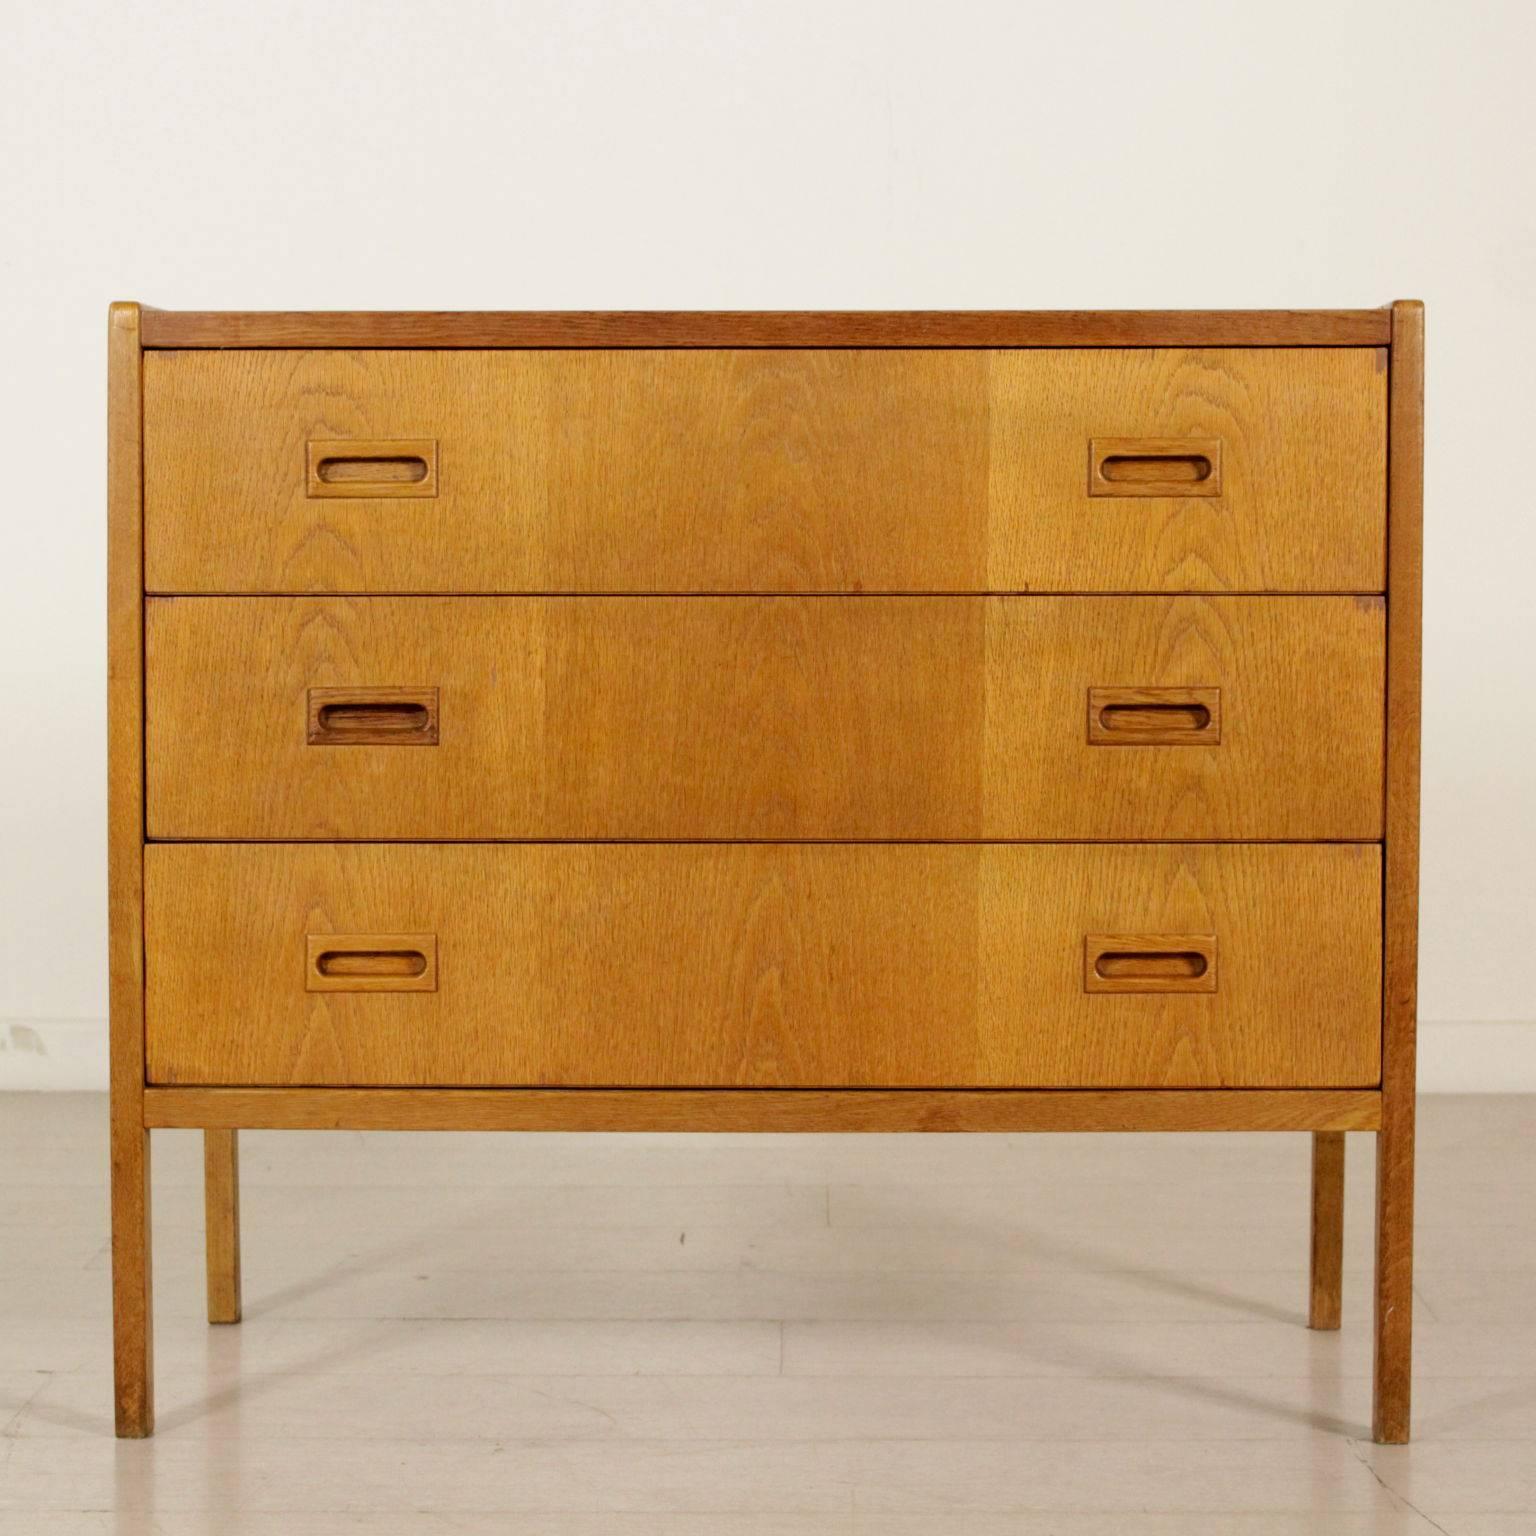 A chest of drawers designed by Bertil Fridhagen (1905-1993) for Bodafors, teakwood, 1959.